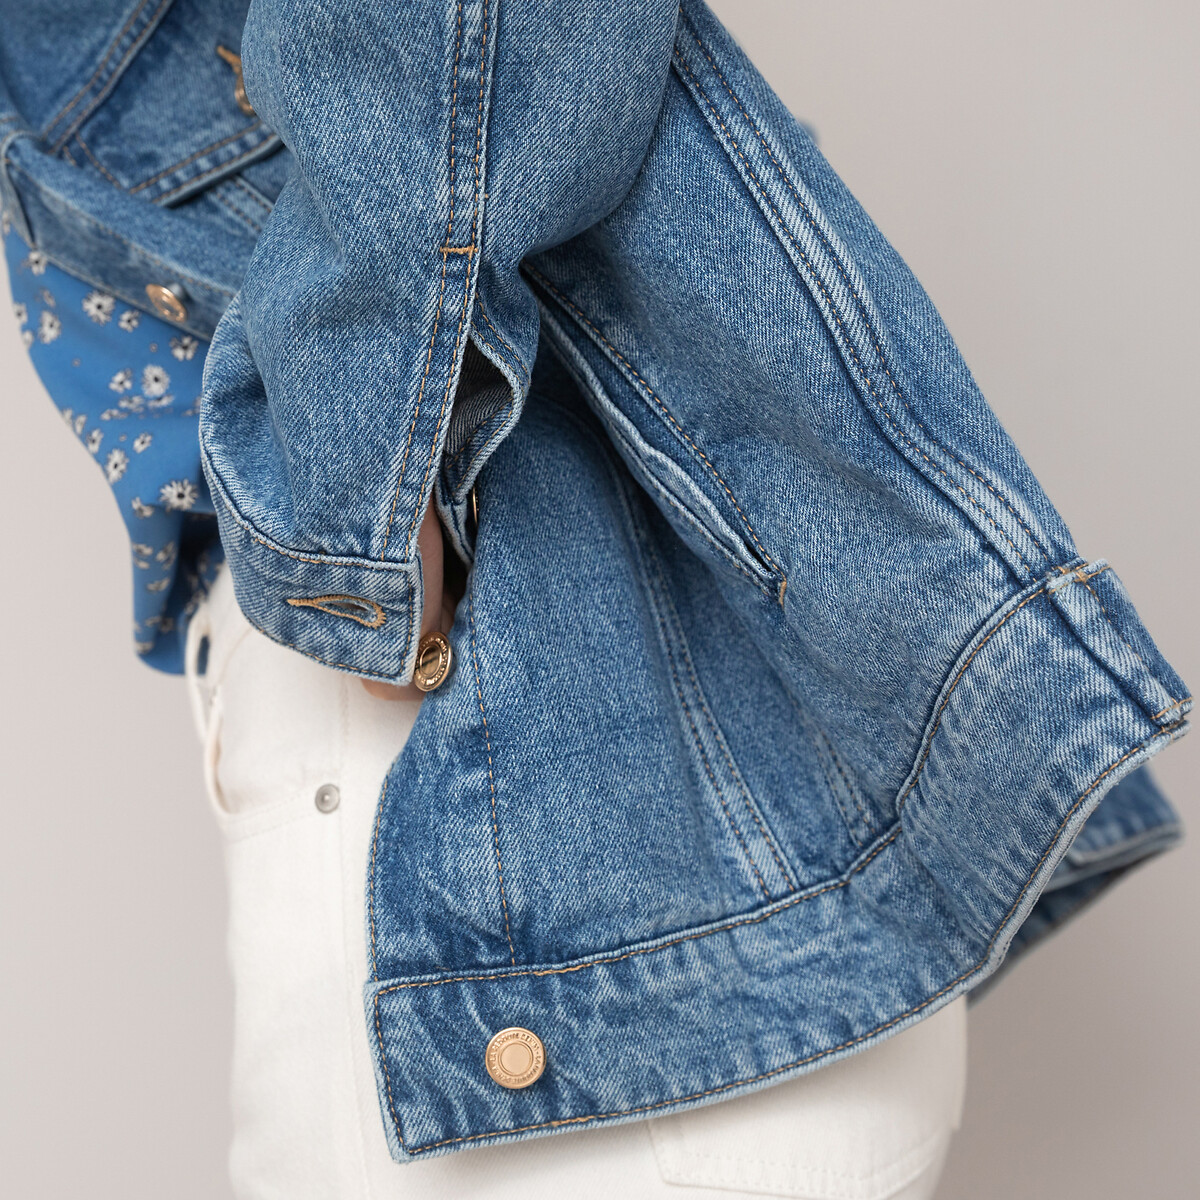 Куртка Из джинсовой ткани широкого покроя 48 (FR) - 54 (RUS) синий LaRedoute, размер 48 (FR) - 54 (RUS) Куртка Из джинсовой ткани широкого покроя 48 (FR) - 54 (RUS) синий - фото 3